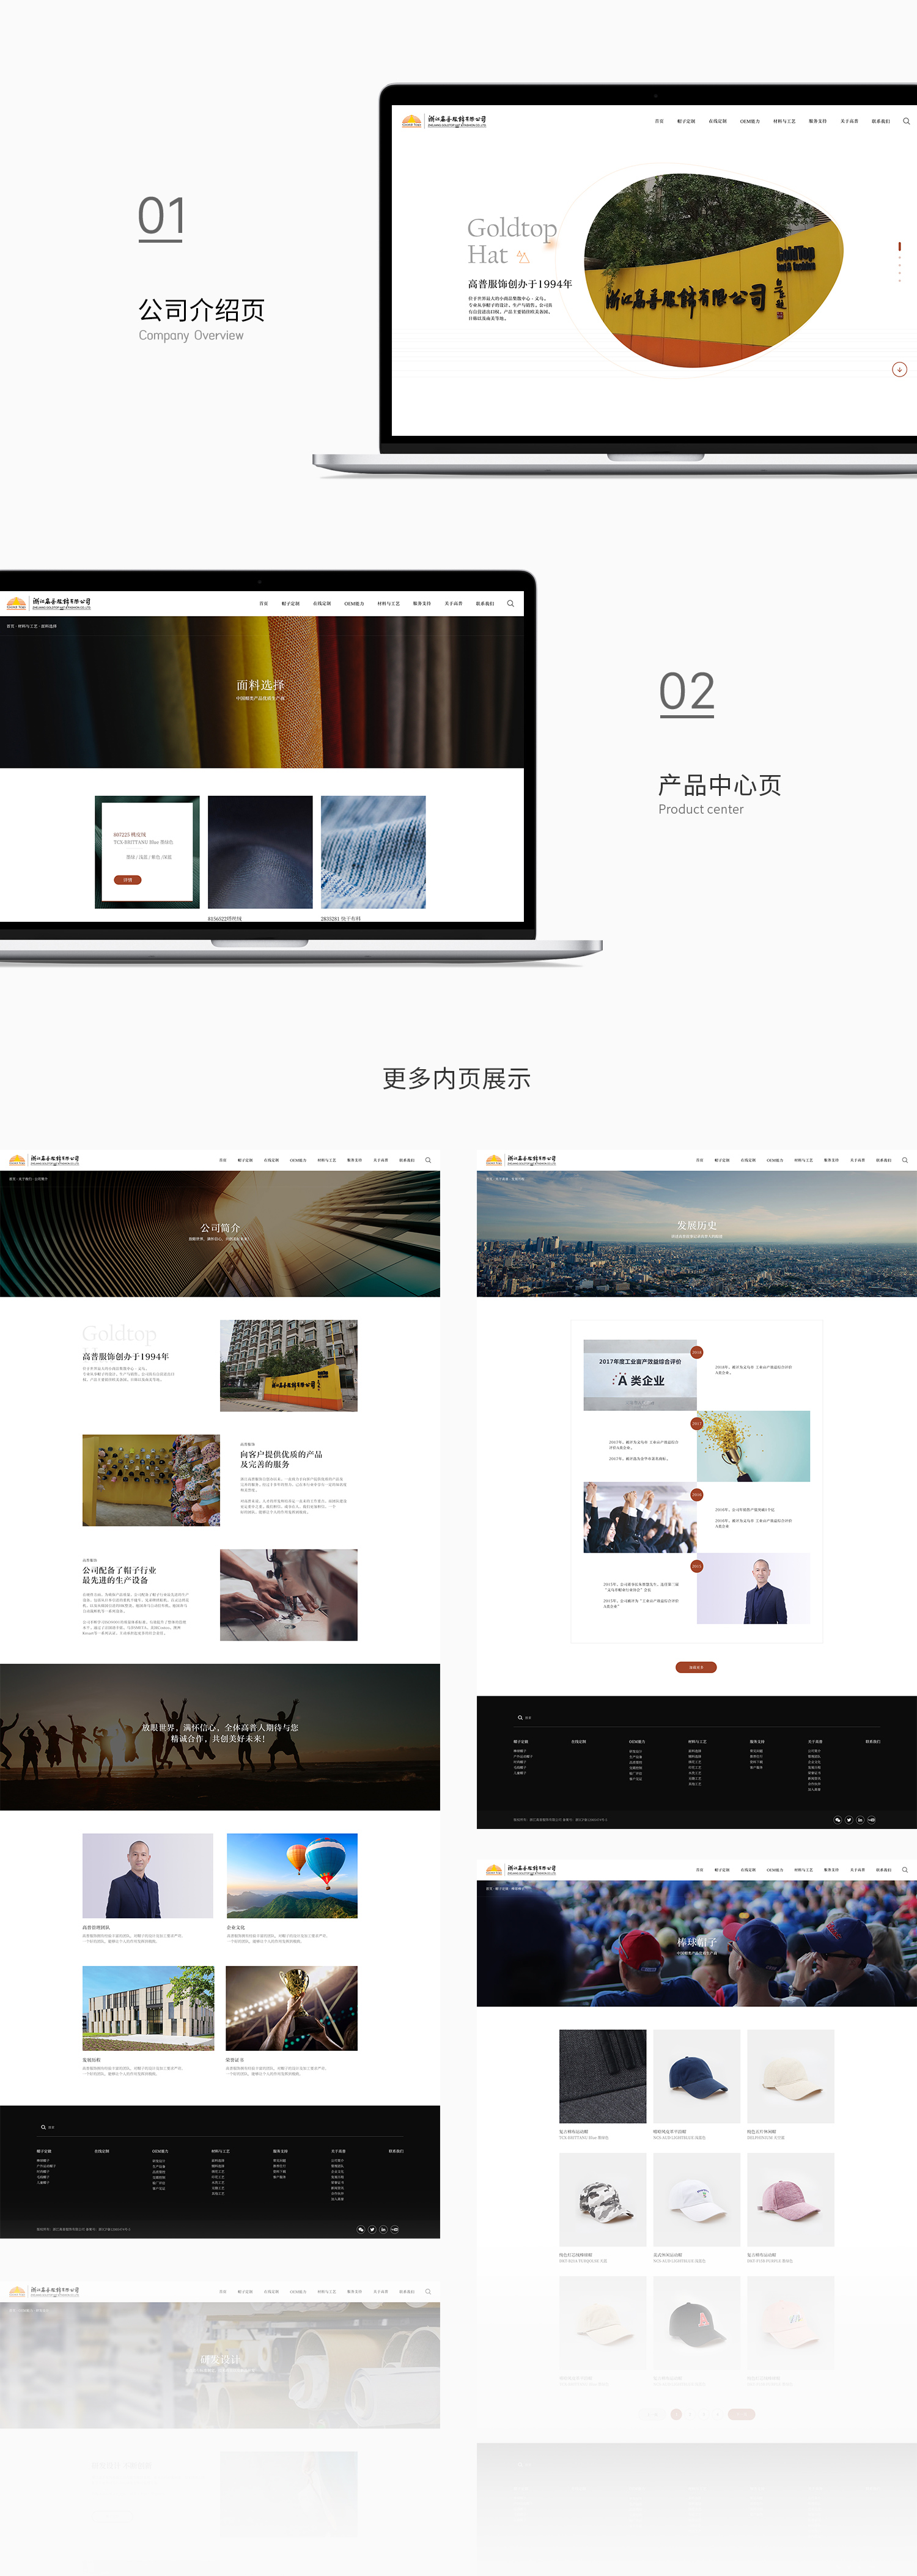 高普帽业网站建设开发-新媒体营销,新媒体广告公司,上海网络营销,微信代运营,高端网站建设,网站建设公司